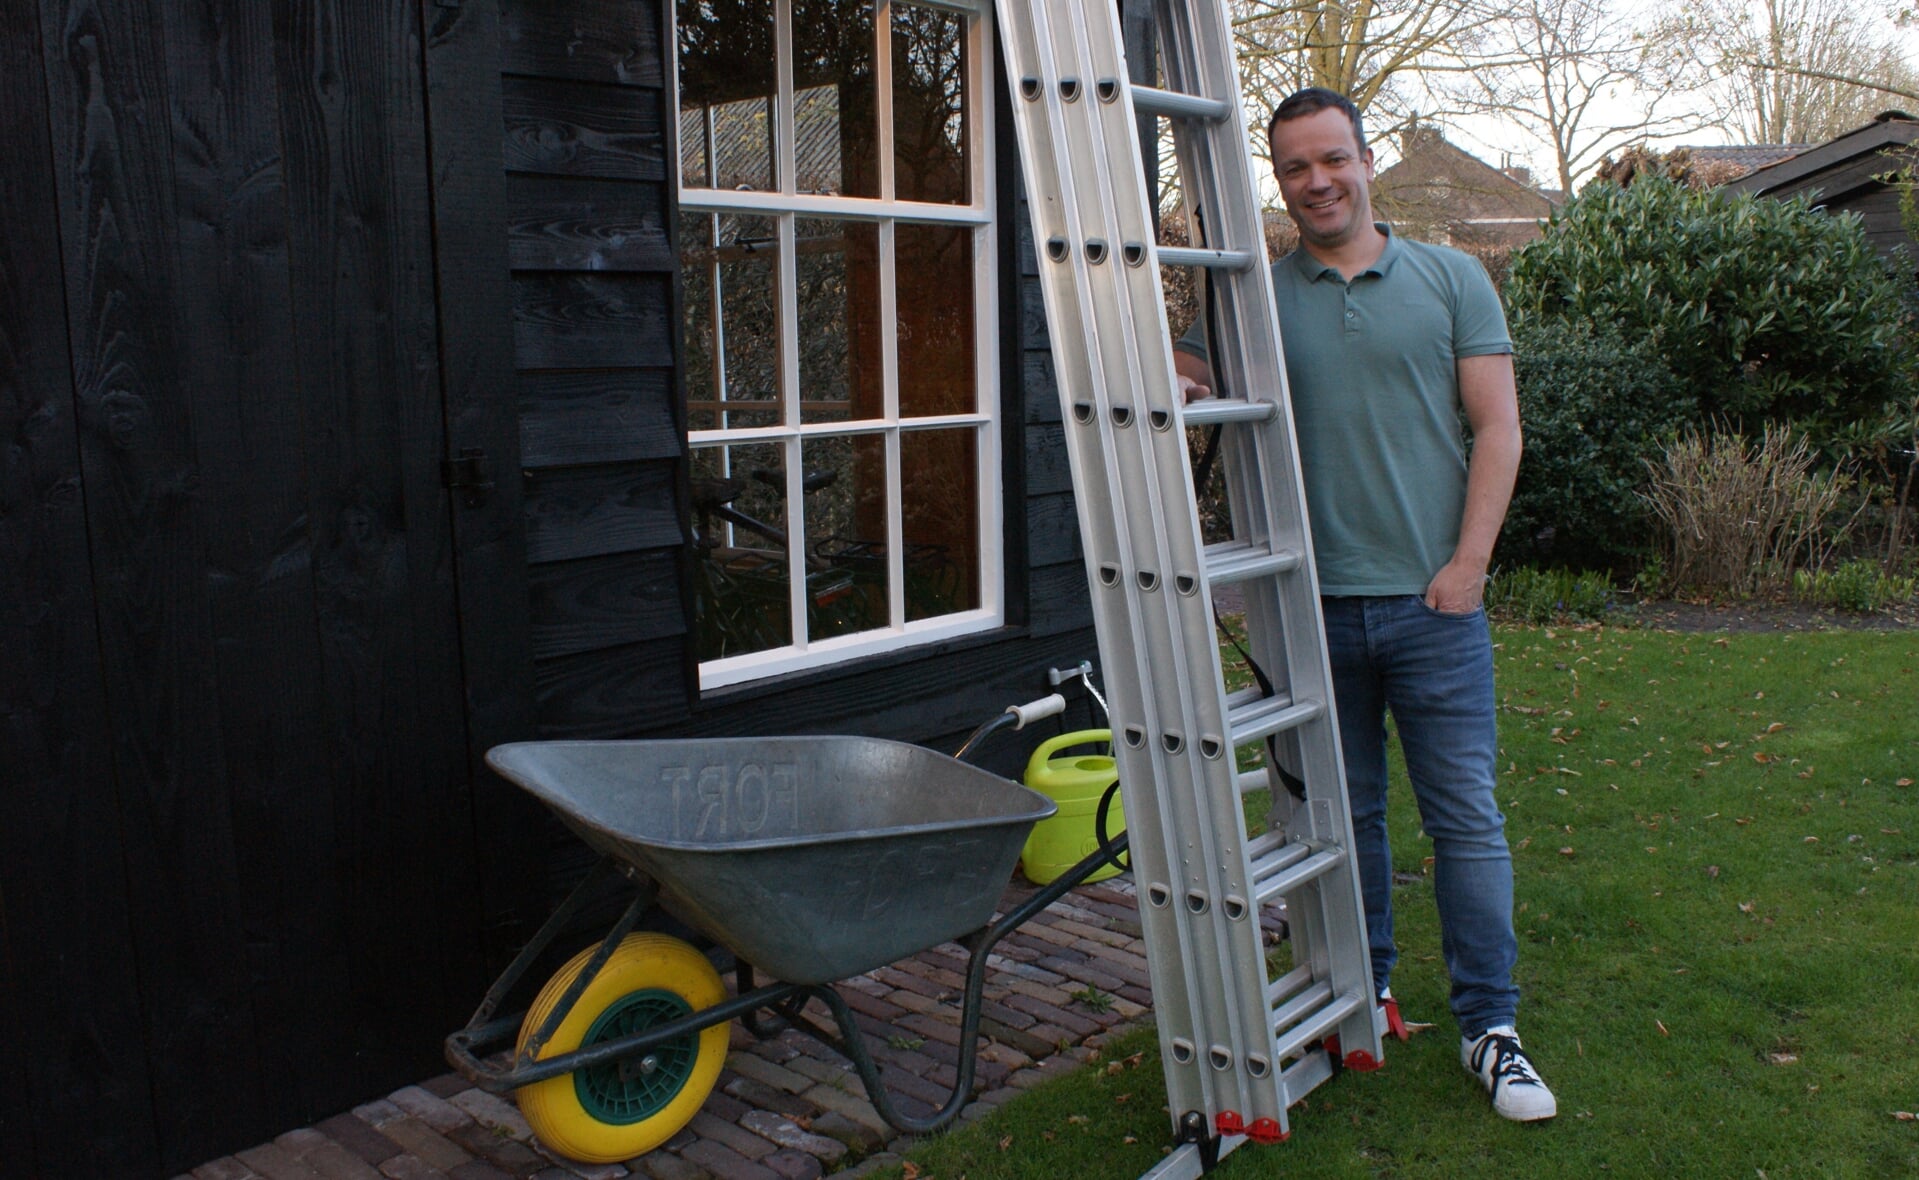 Maarten Voets poseert bij de kruiwagen en de driedelige ladder die hij onder de naam Huurman uitleent in Liempde en omgeving. Zijn initiatief kan rekenen op veel positieve reacties. (Foto: Marc Cleutjens).